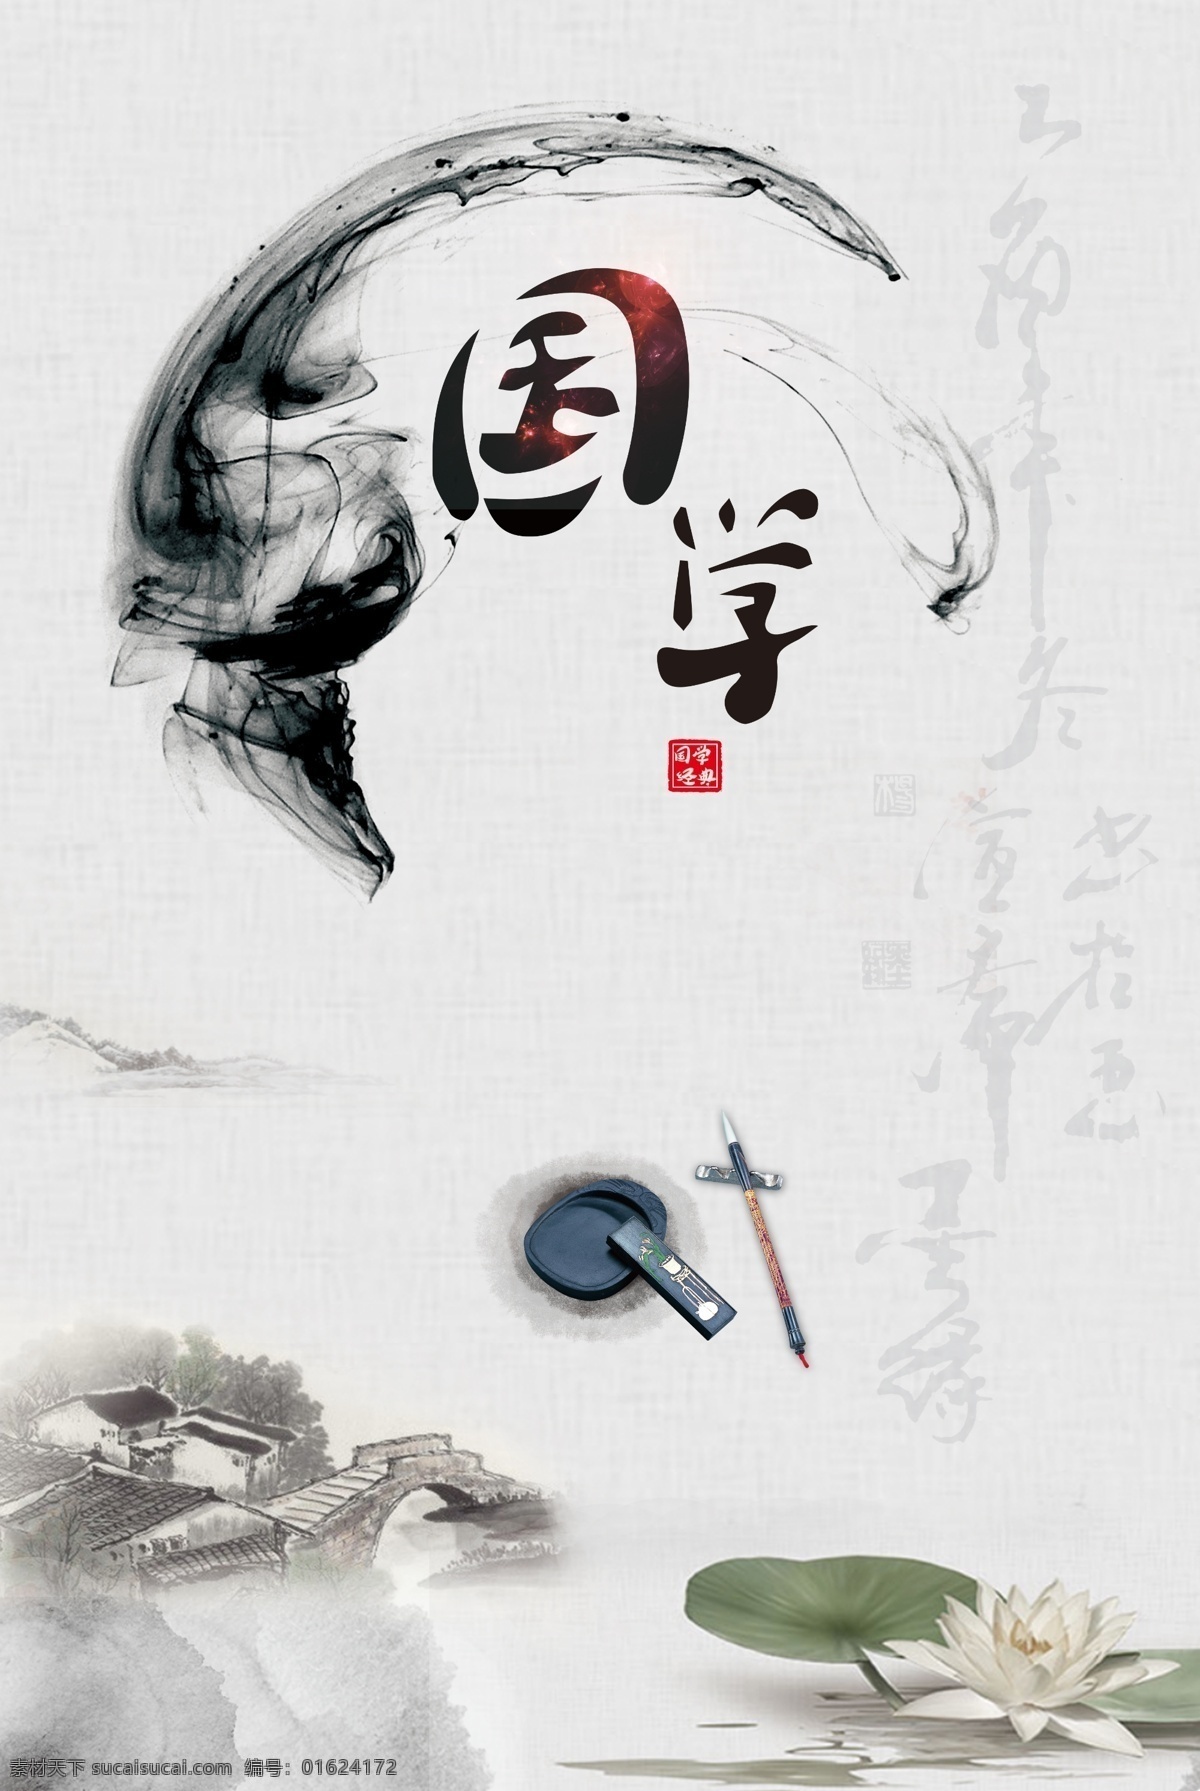 国学图片 中国风 水墨画 毛笔 文化 彩页 海报 笔刷 荷叶 荷花